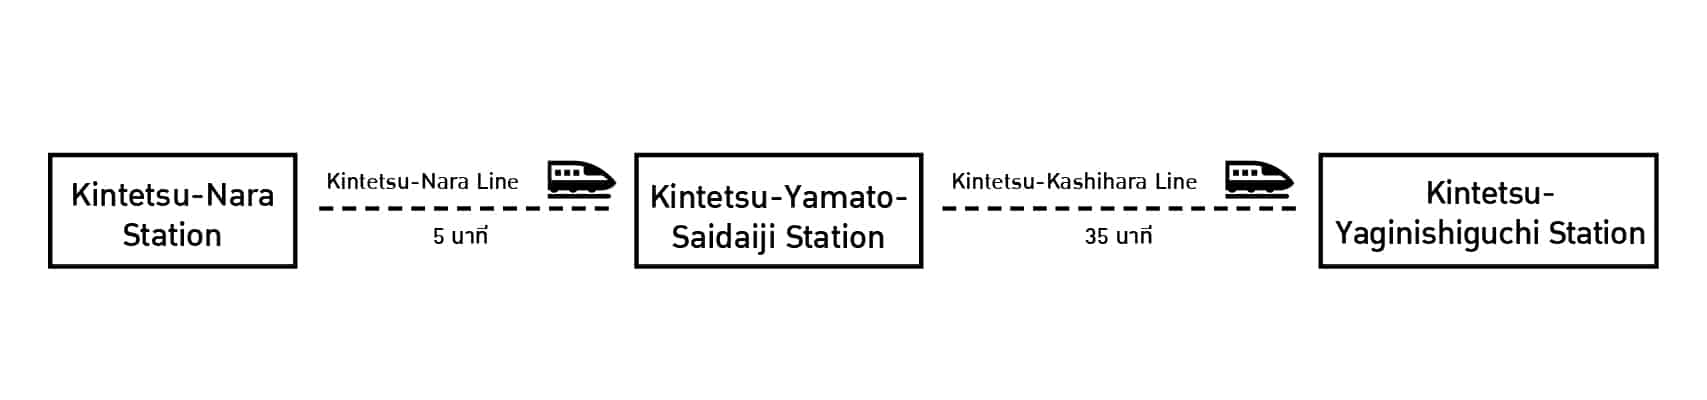 การเดินทางจากสถานีรถไฟคินเท็ตสึนาราไปยังสถานีรถไฟคินเท็ตสึ Yaginishiguchi